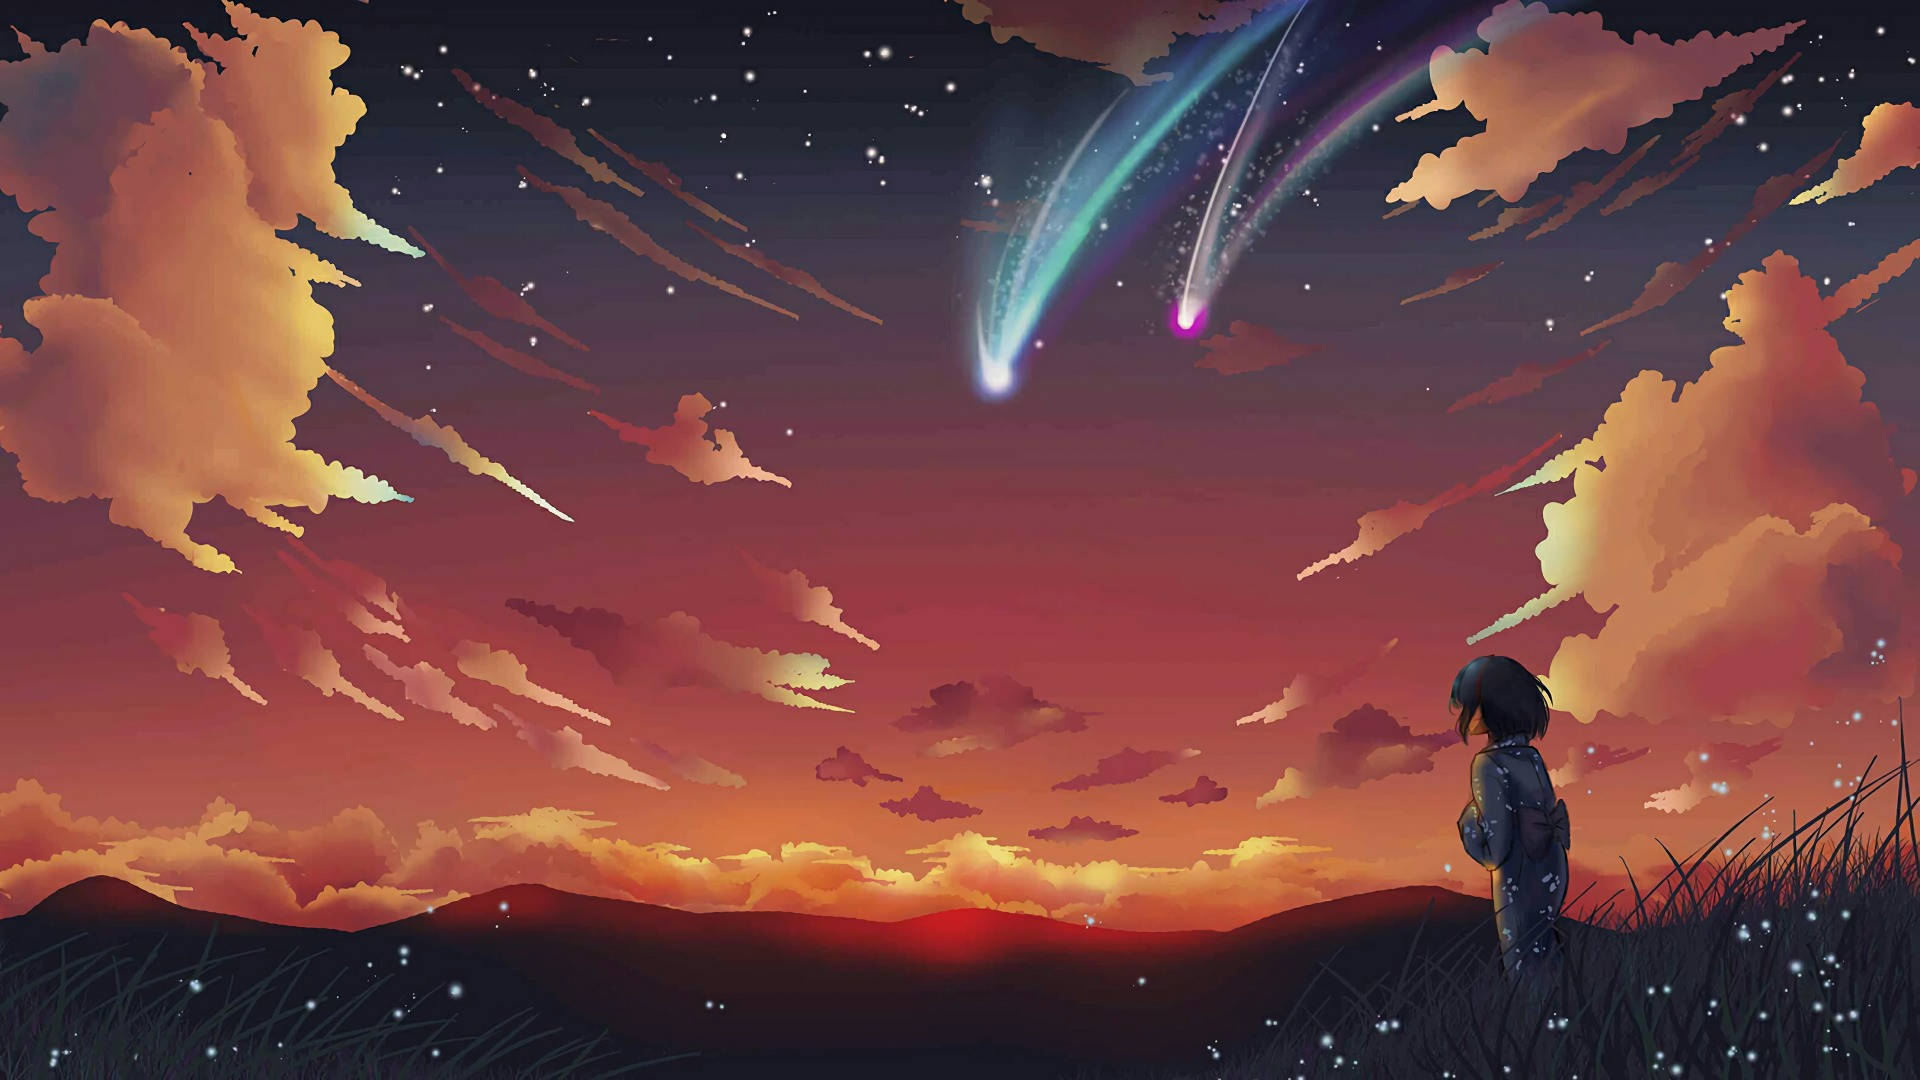 Anime Landscape Shooting Stars Wallpaper